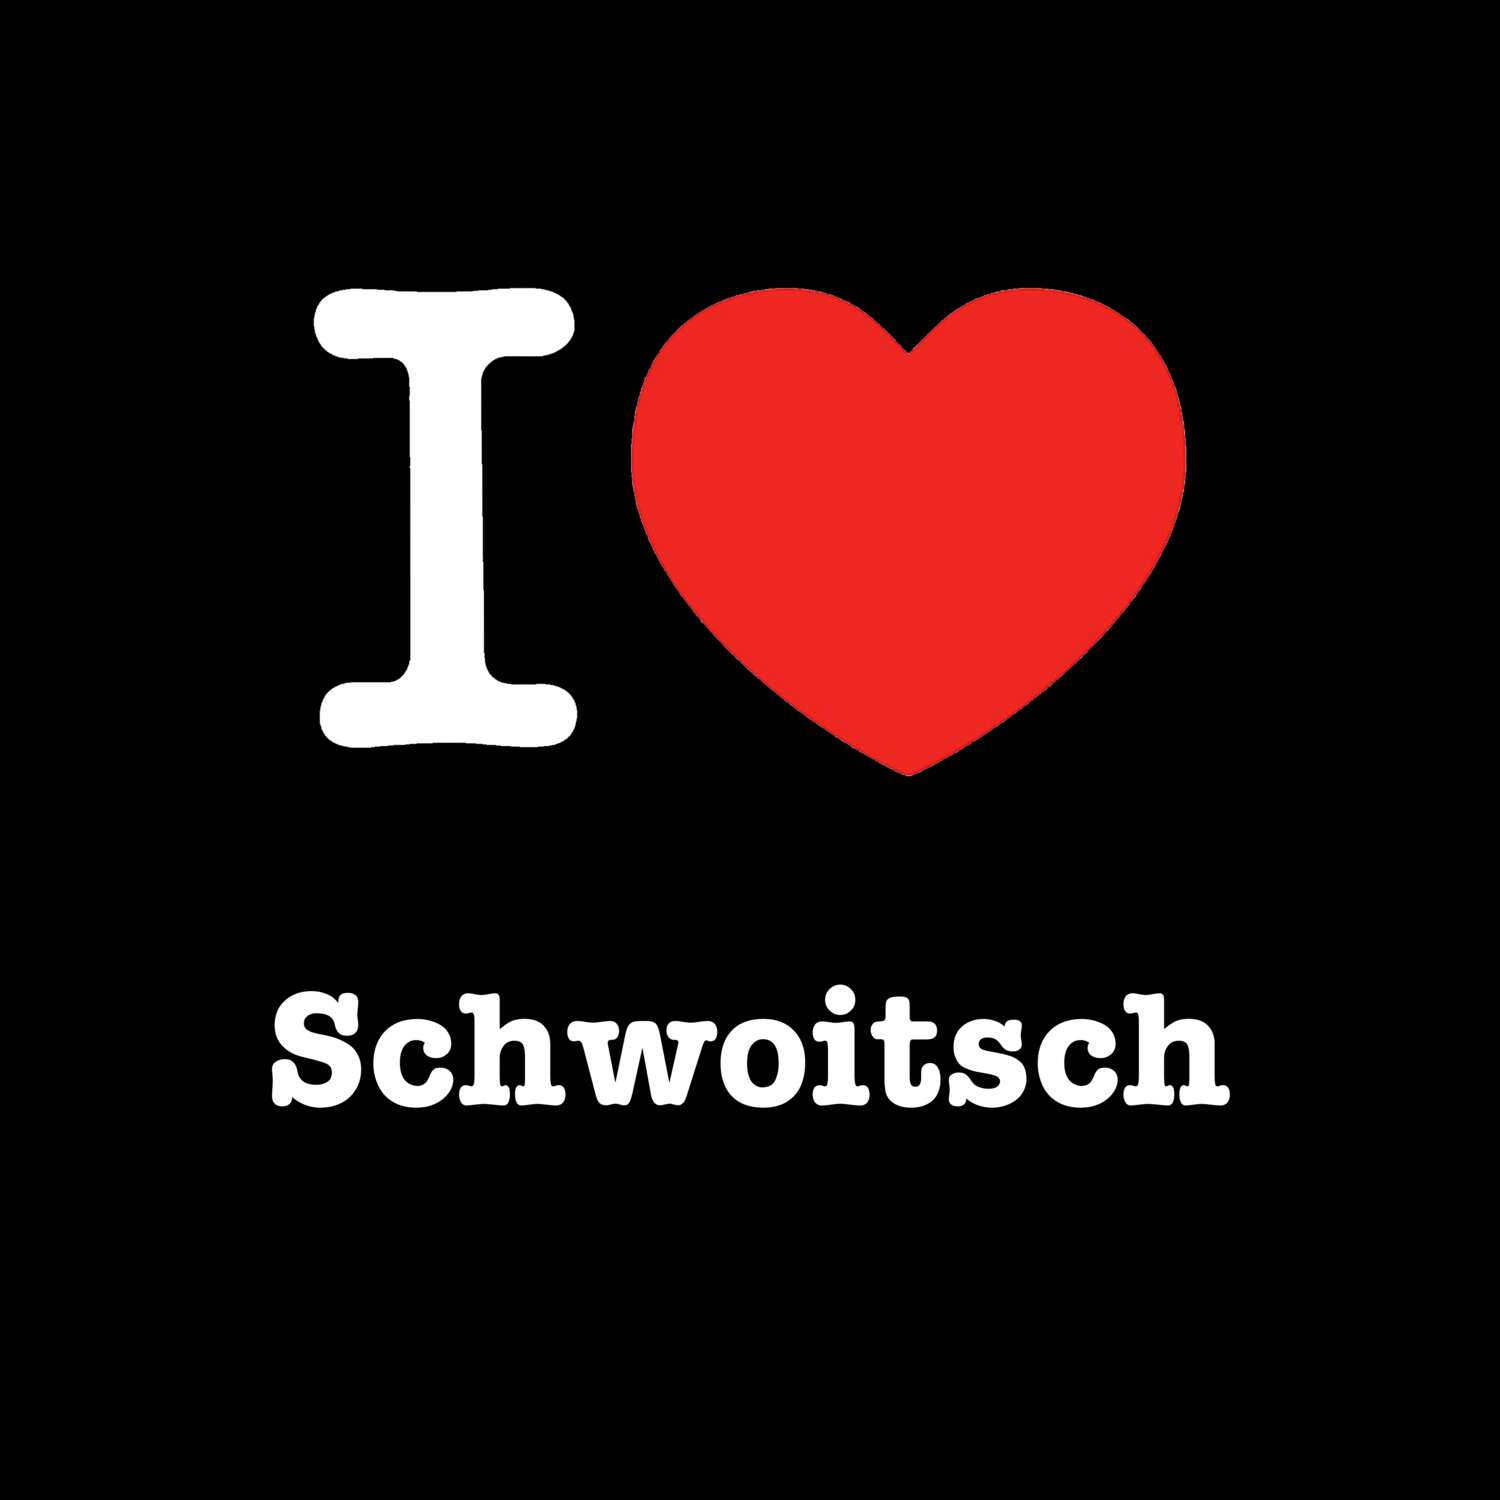 Schwoitsch T-Shirt »I love«